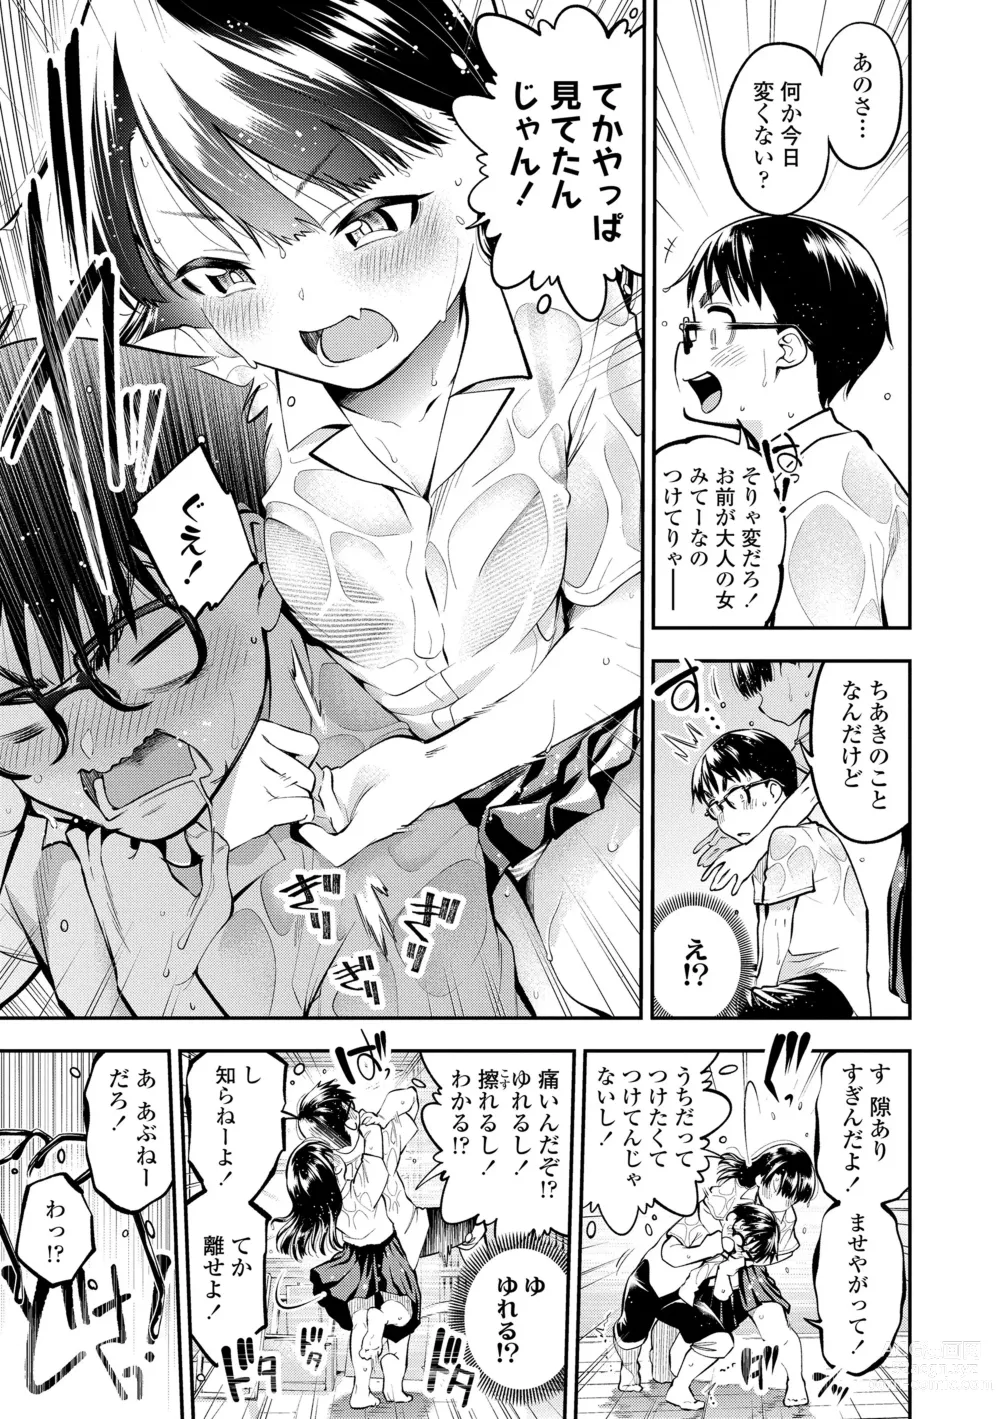 Page 11 of manga Onnanoko ni Shite yo - Make me your first lover.